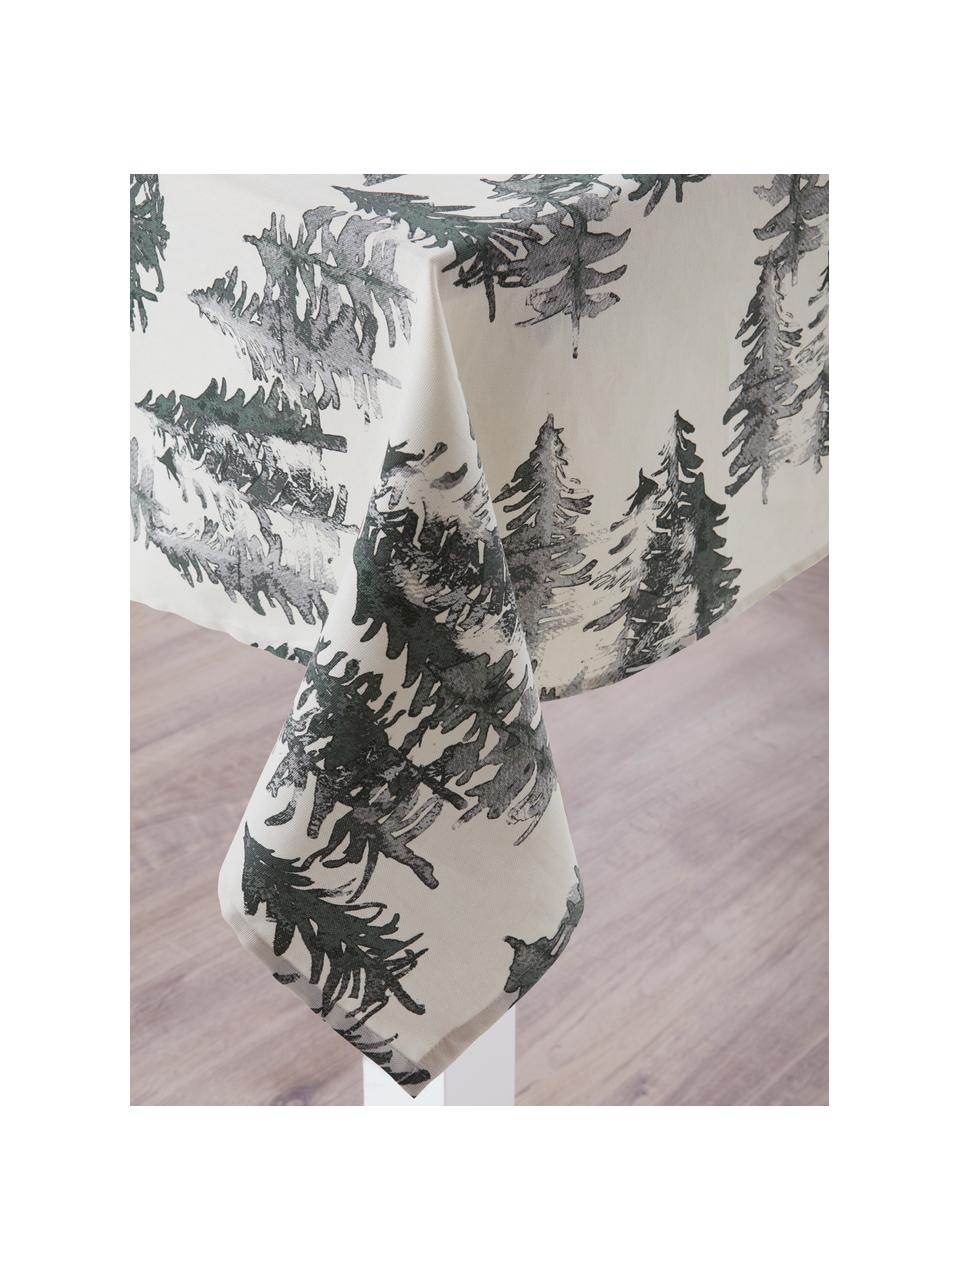 Tafelkleed Forrest, 100% katoen, afkomstig van duurzame katoenteelt, Crèmekleurig, groen- en grijstinten, 145 x 200 cm